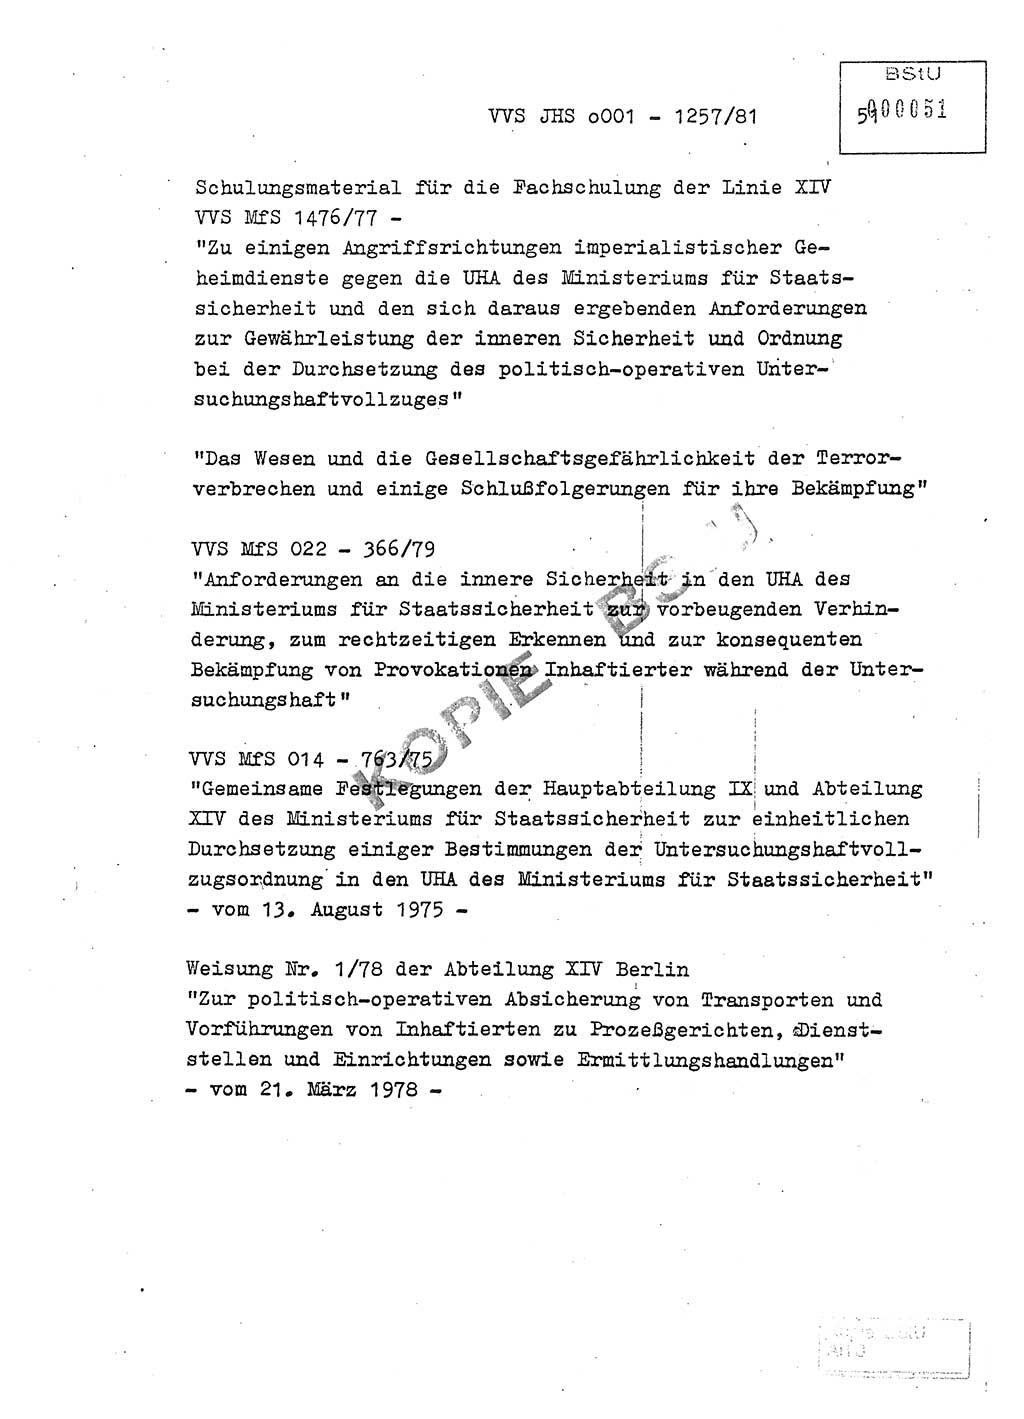 Fachschulabschlußarbeit Unterleutnant Dieter Möller (BV Rst. Abt. ⅩⅣ), Ministerium für Staatssicherheit (MfS) [Deutsche Demokratische Republik (DDR)], Juristische Hochschule (JHS), Vertrauliche Verschlußsache (VVS) o001-1257/81, Potsdam 1982, Seite 50 (FS-Abschl.-Arb. MfS DDR JHS VVS o001-1257/81 1982, S. 50)